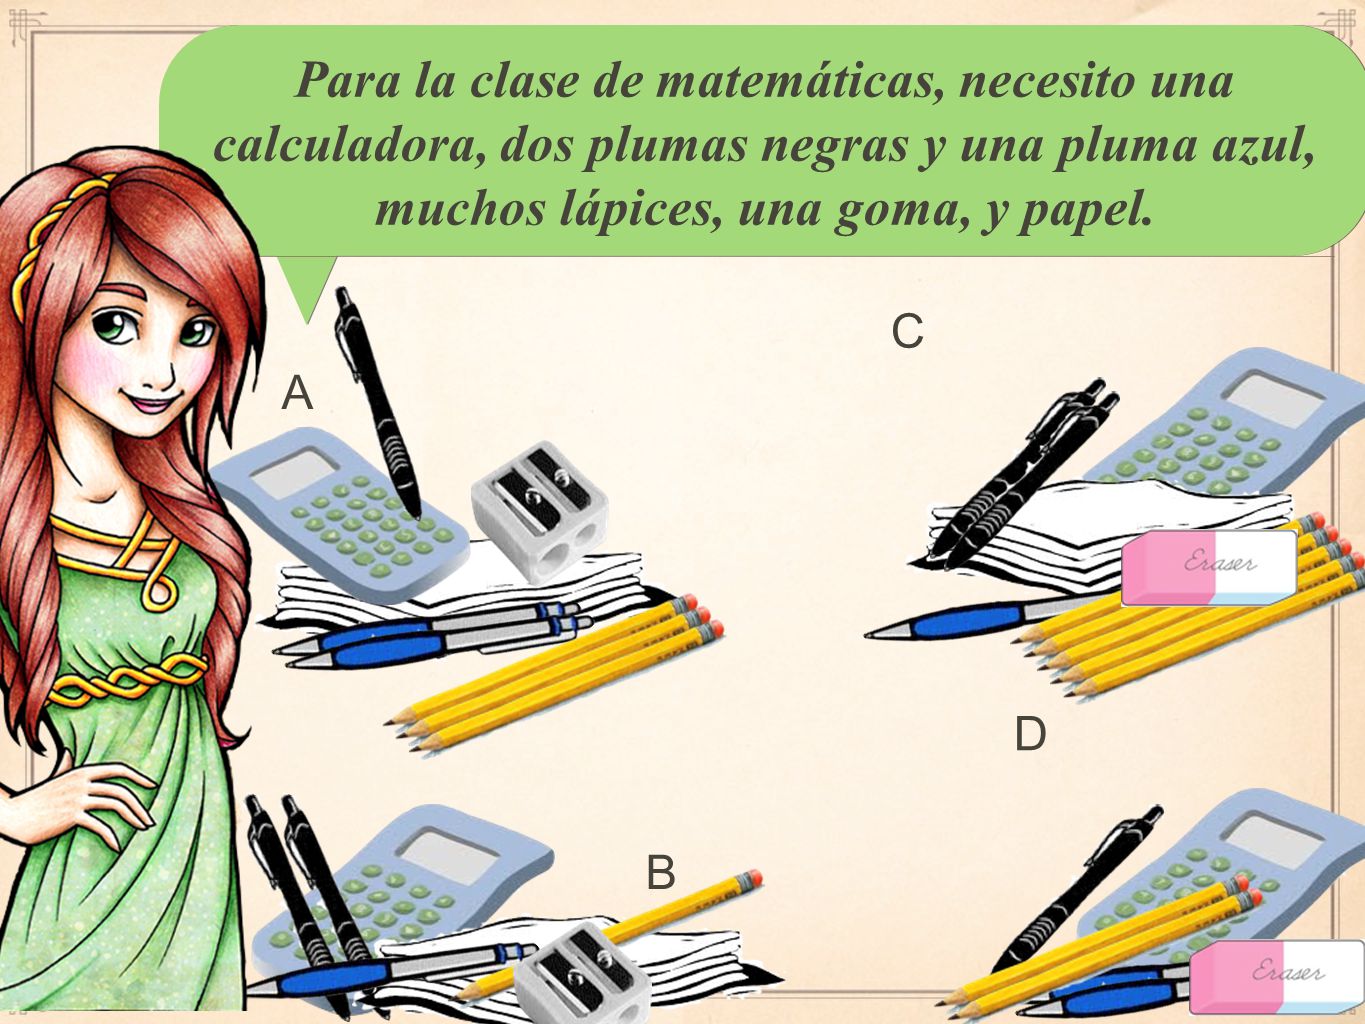 Para la clase de matemáticas, necesito una calculadora, dos plumas negras y una pluma azul, muchos lápices, una goma, y papel.